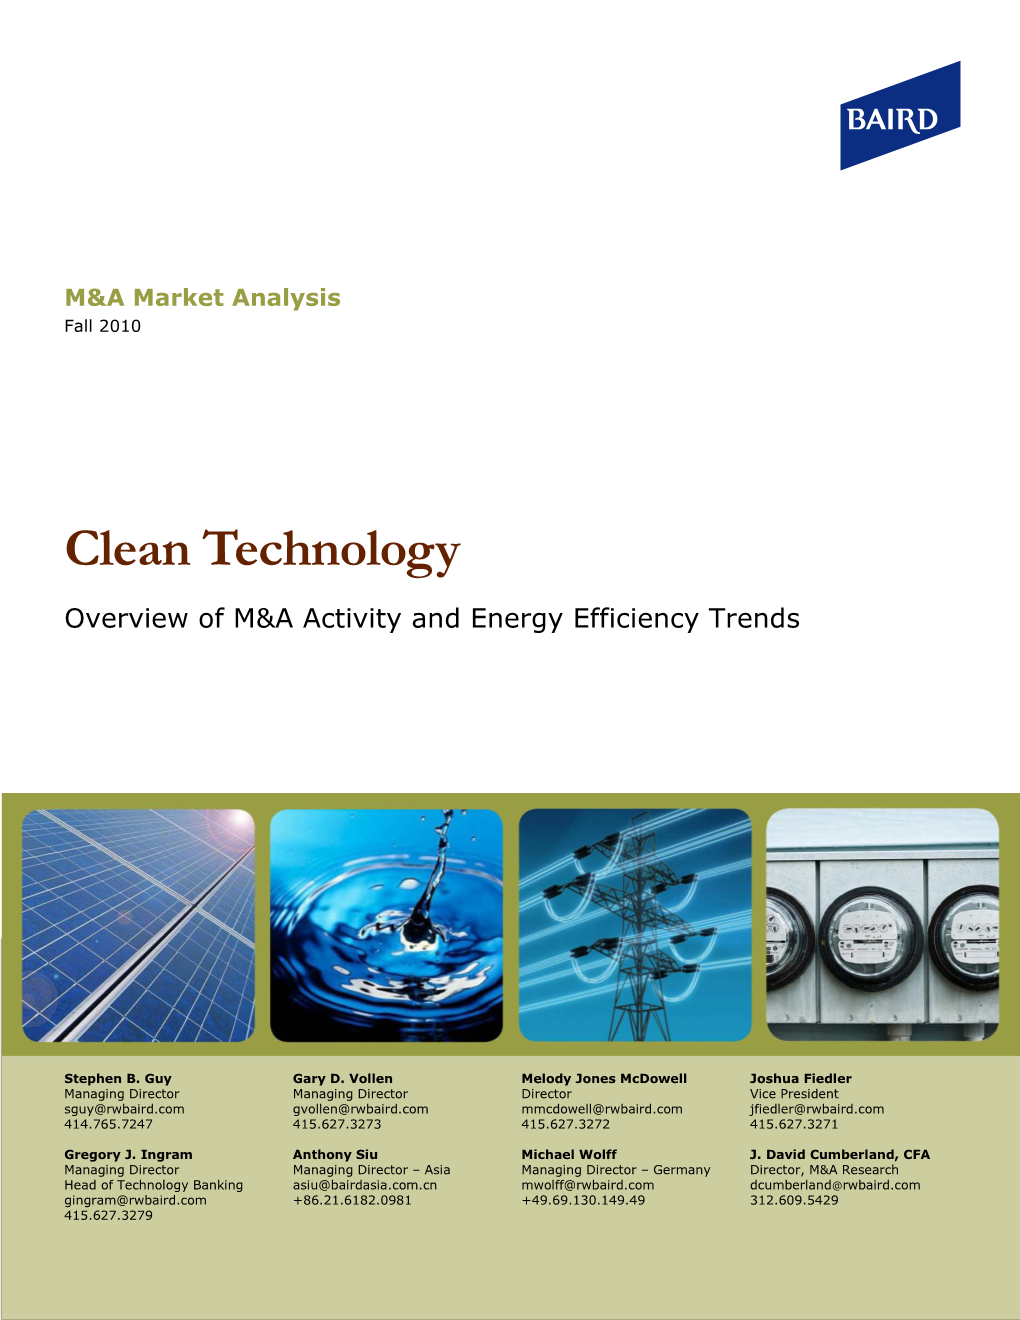 Energy Efficiency Trends